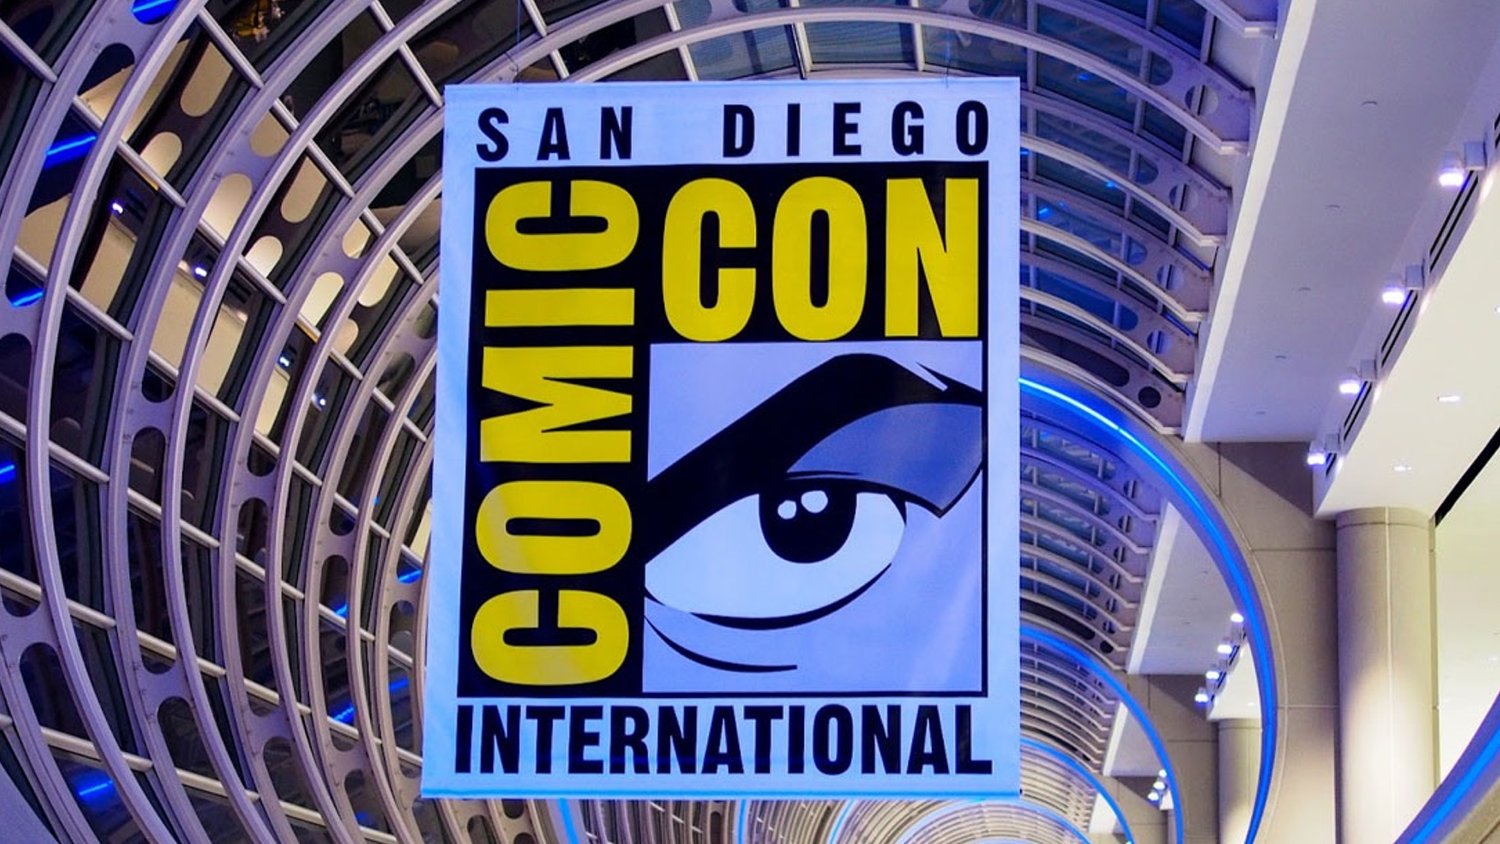 Les studios renflouant le Comic-Con cette année incluent Marvel, Netflix, Disney, Sony, HBO et Universal